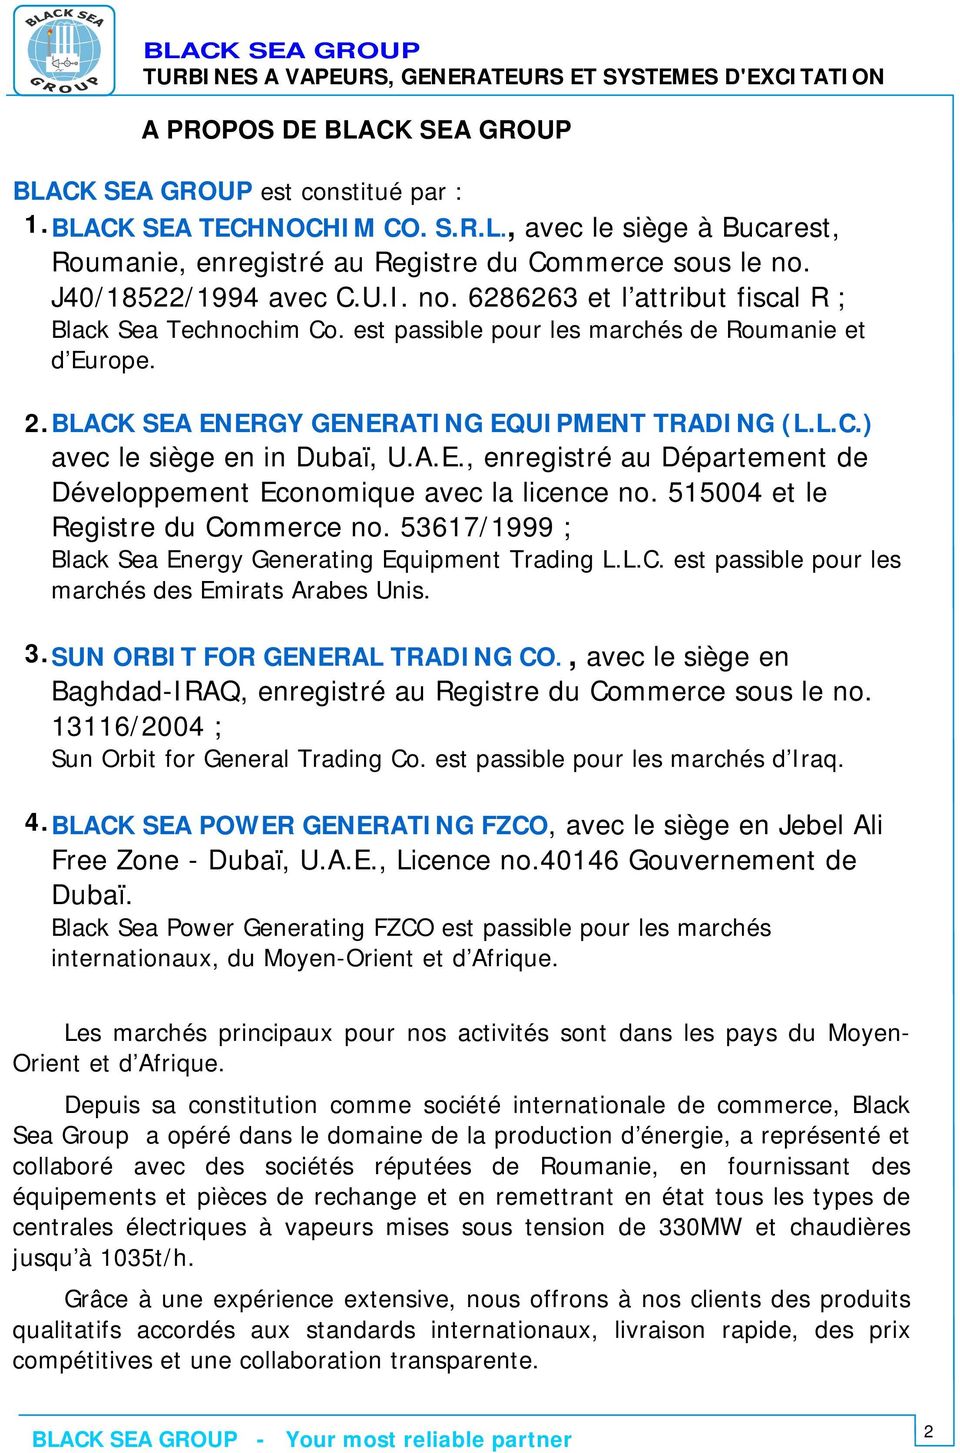 A.E., enregistré au Département de Développement Economique avec la licence no. 515004 et le Registre du Commerce no. 53617/1999 ; Black Sea Energy Generating Equipment Trading L.L.C. est passible pour les marchés des Emirats Arabes Unis.